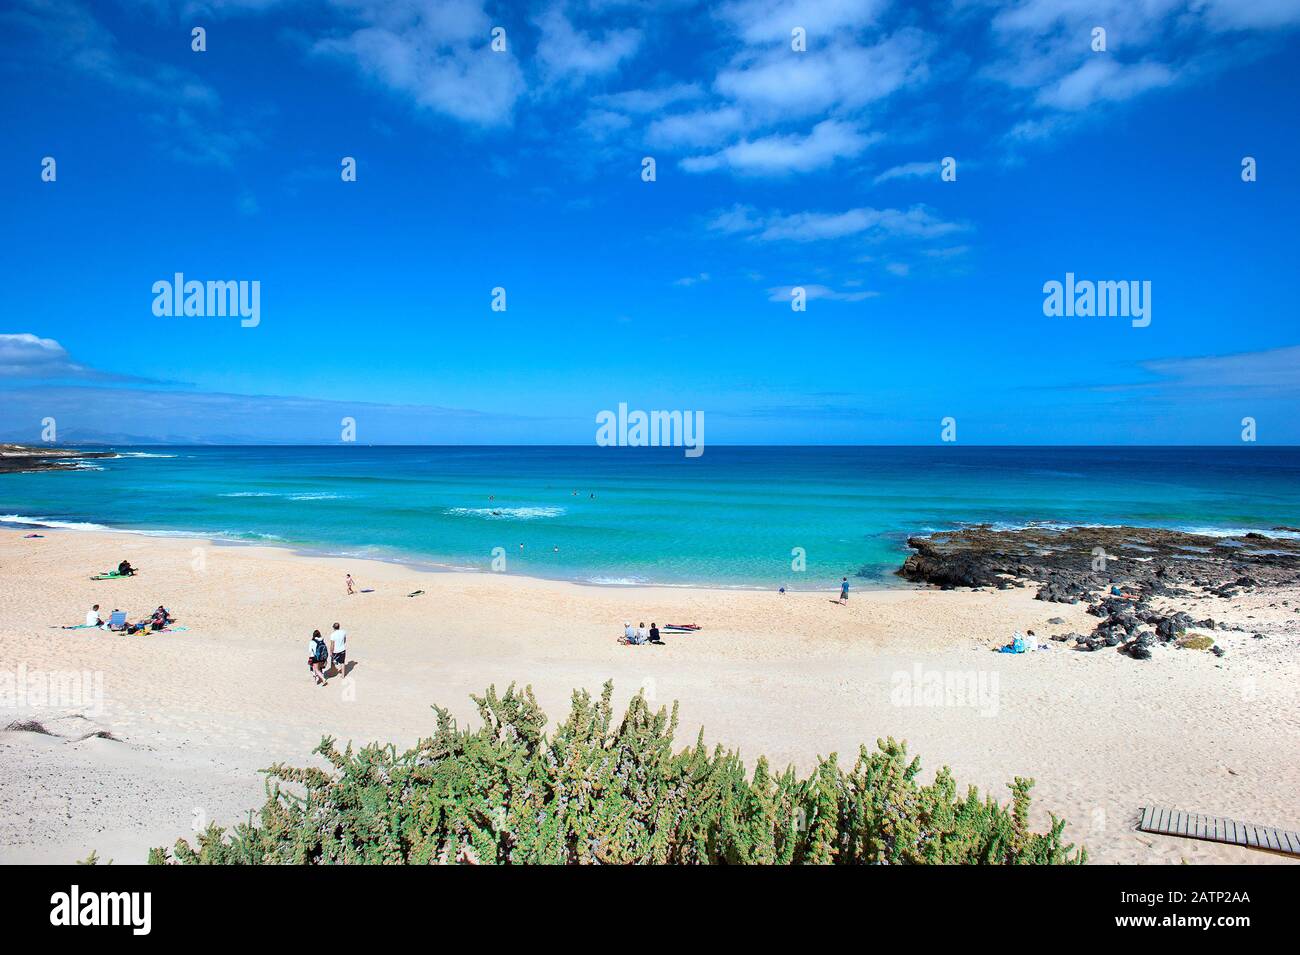 Beach at Corralejo, Fuerteventura, Canary islands, Spain Stock Photo